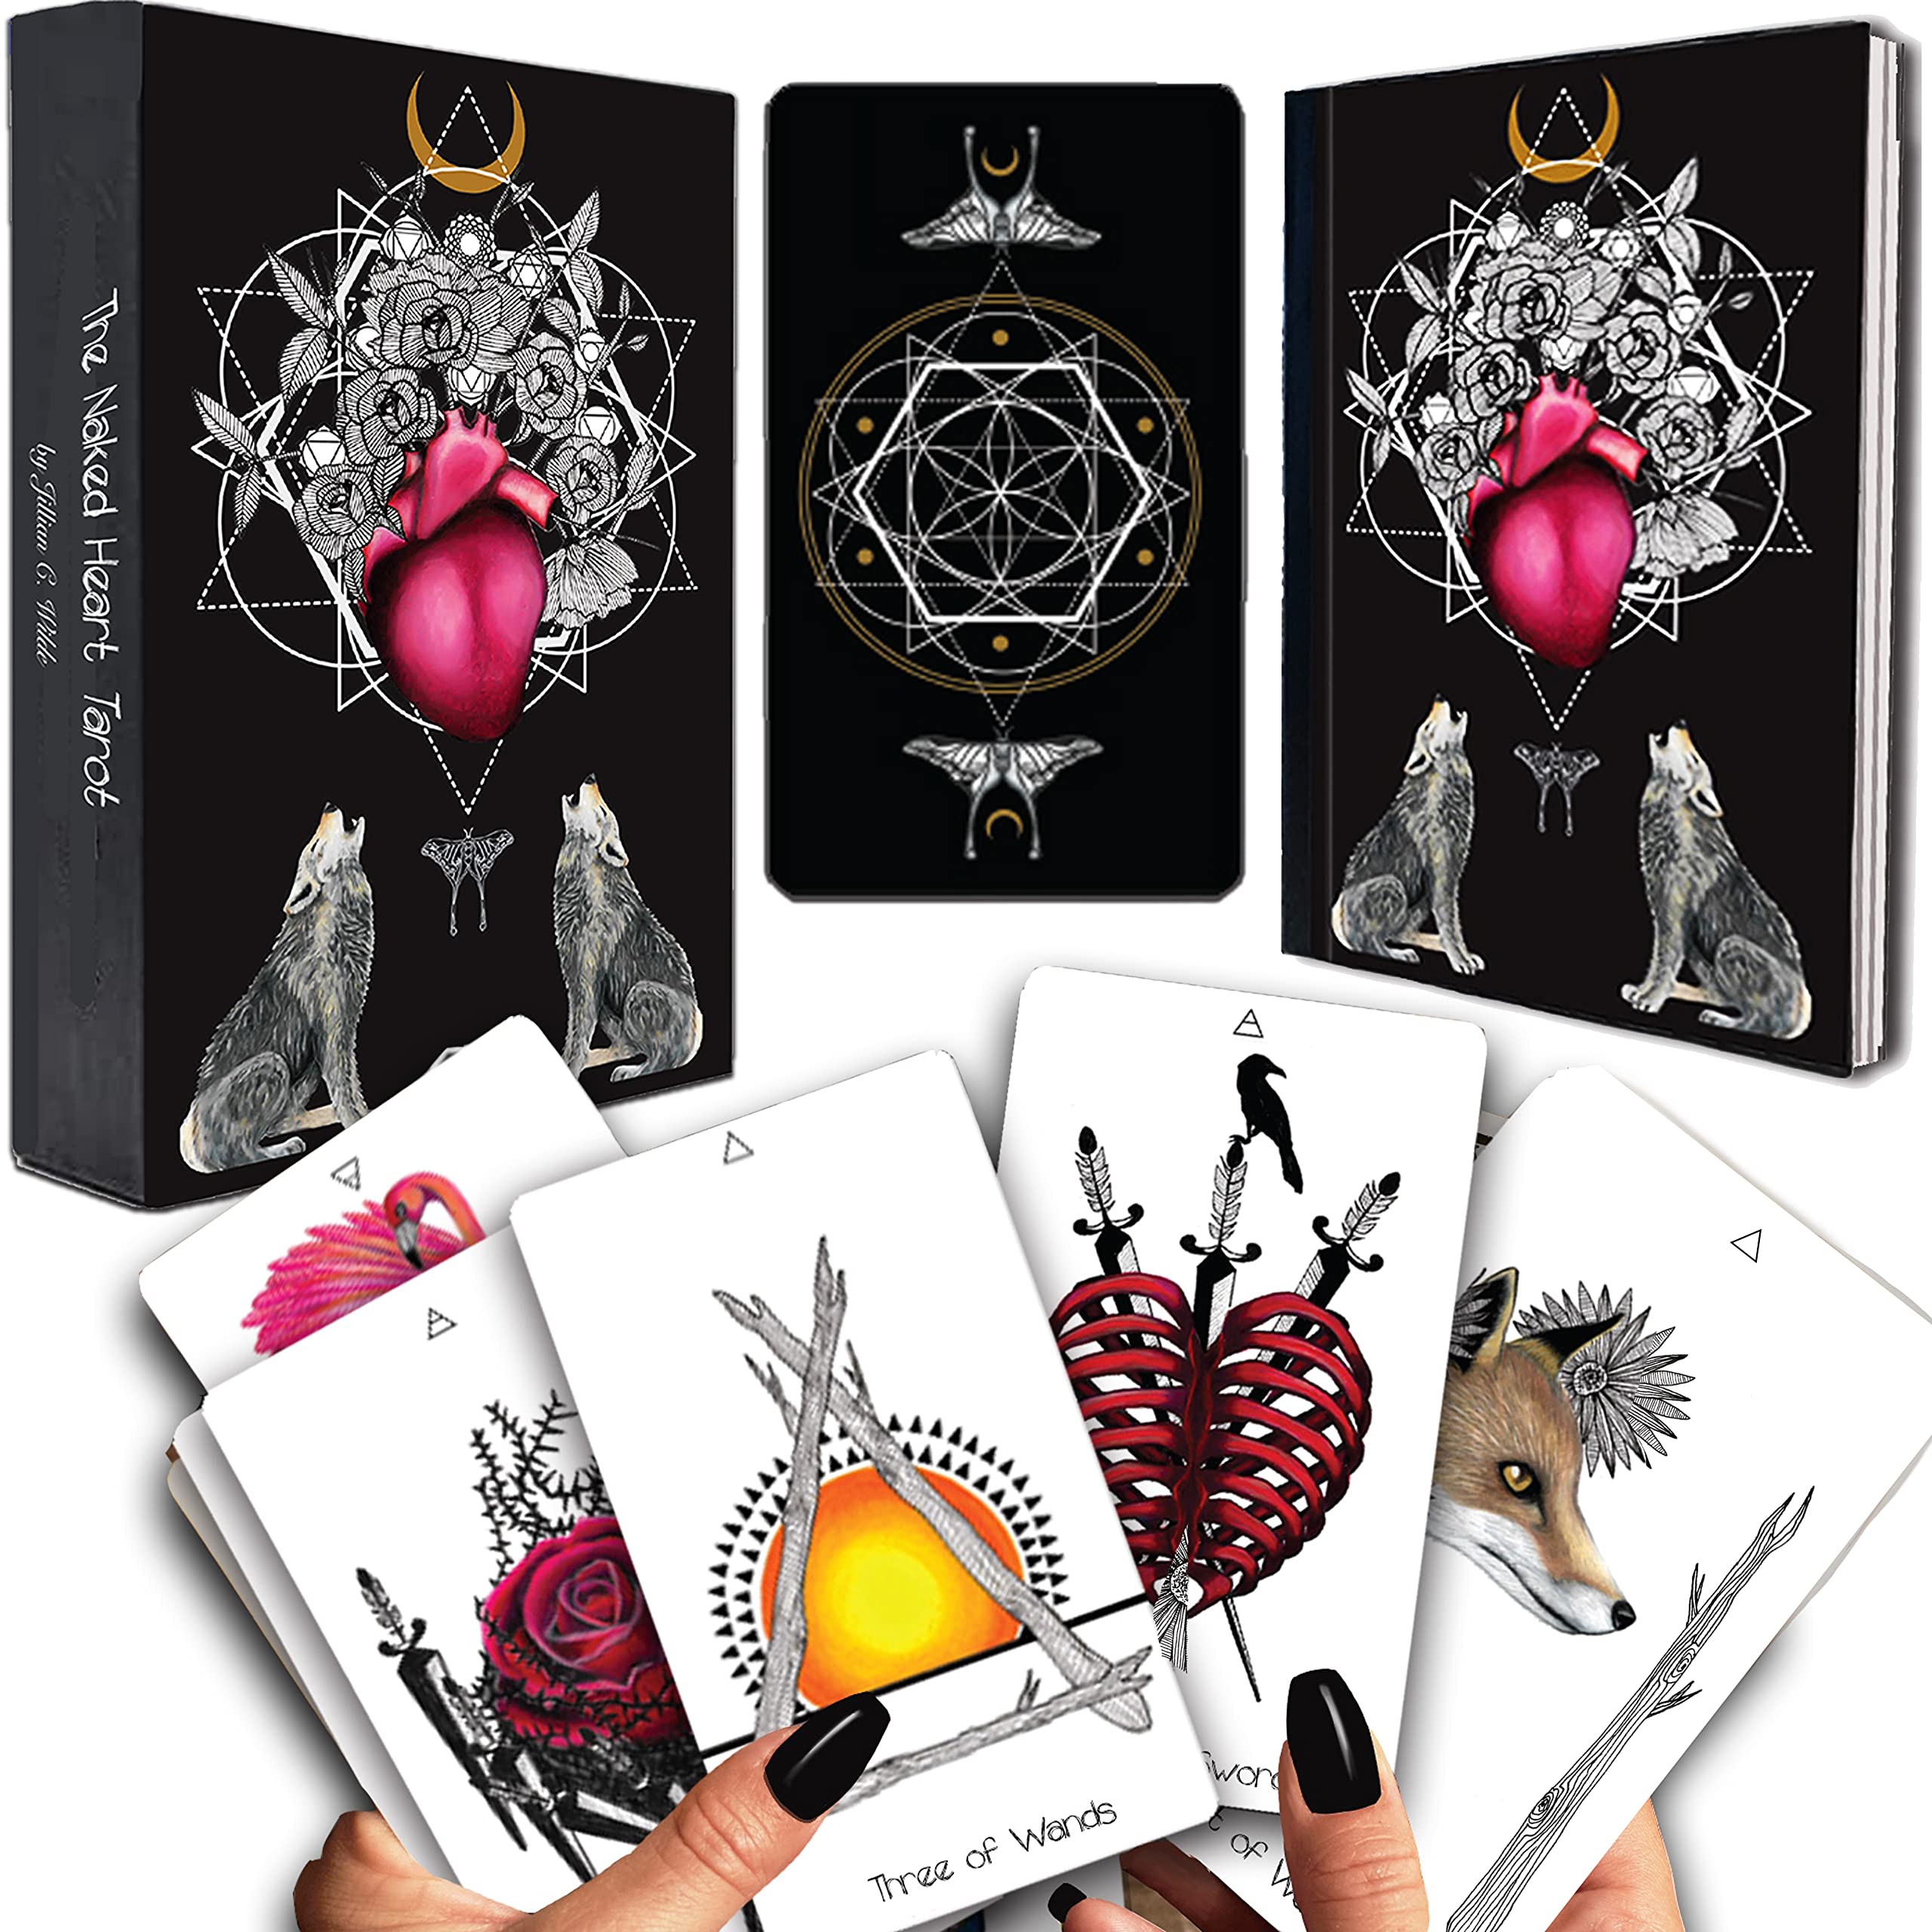 Mua Naked Heart Tarot Deck by Jillian C. Wilde - Black Tarot Deck Tarot  Cards with Guide Book - Nature & Animal Tarot Cards for Beginners & All  Level Tarot Cards Deck